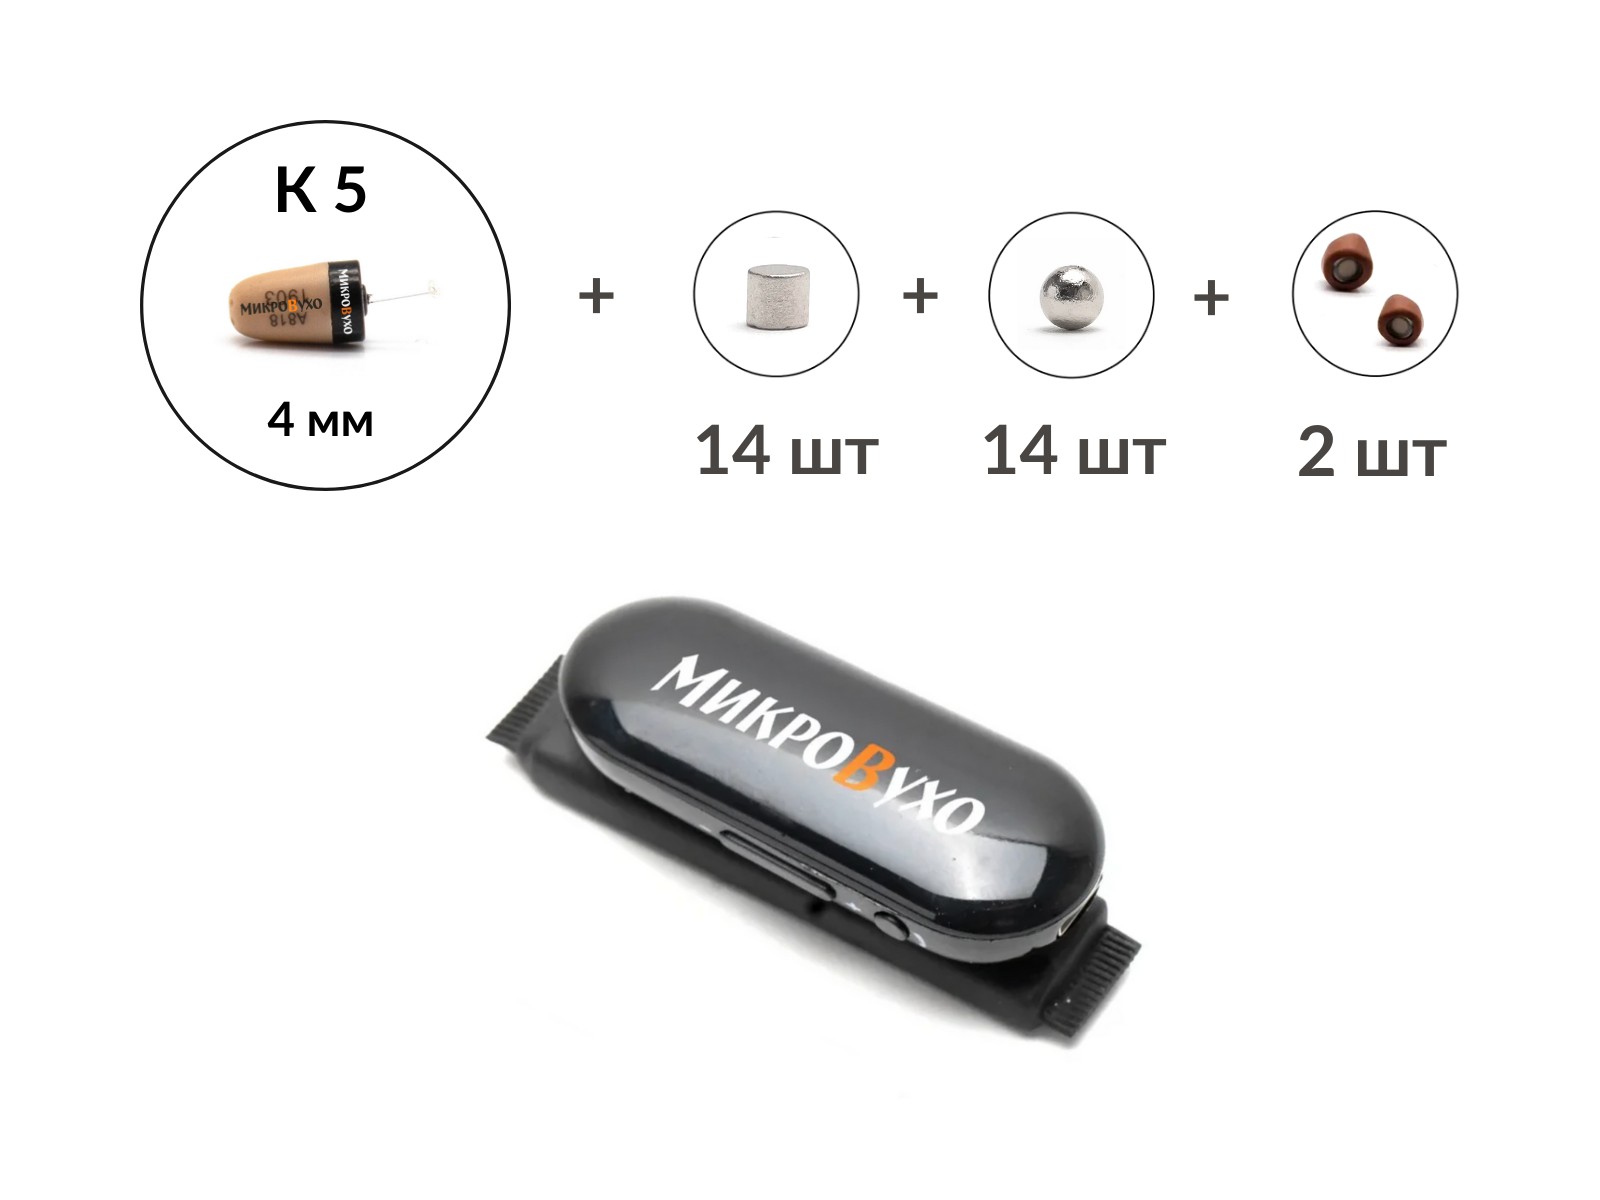 Универсальная гарнитура Bluetooth Box Pro Plus c капсулой К5 4 мм и магнитами 2 мм - изображение 4